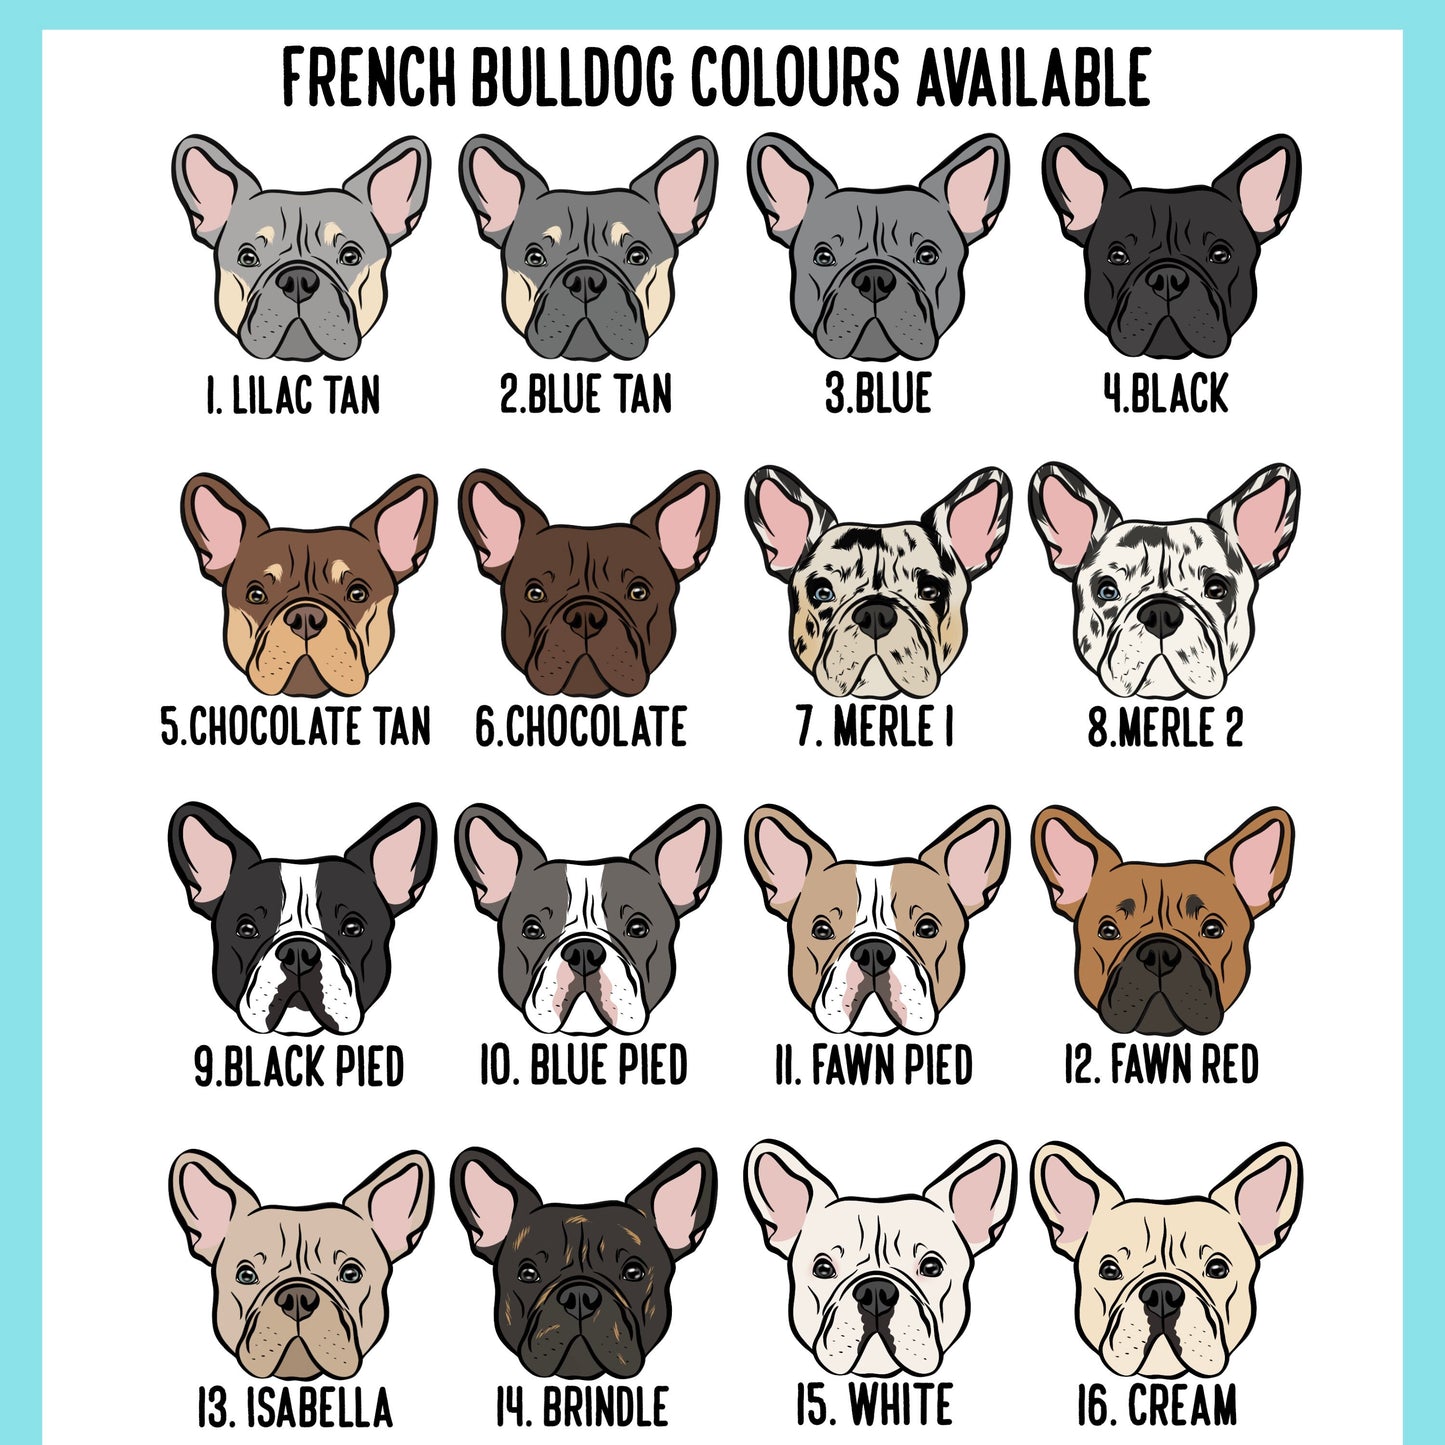 French Bulldog Leash